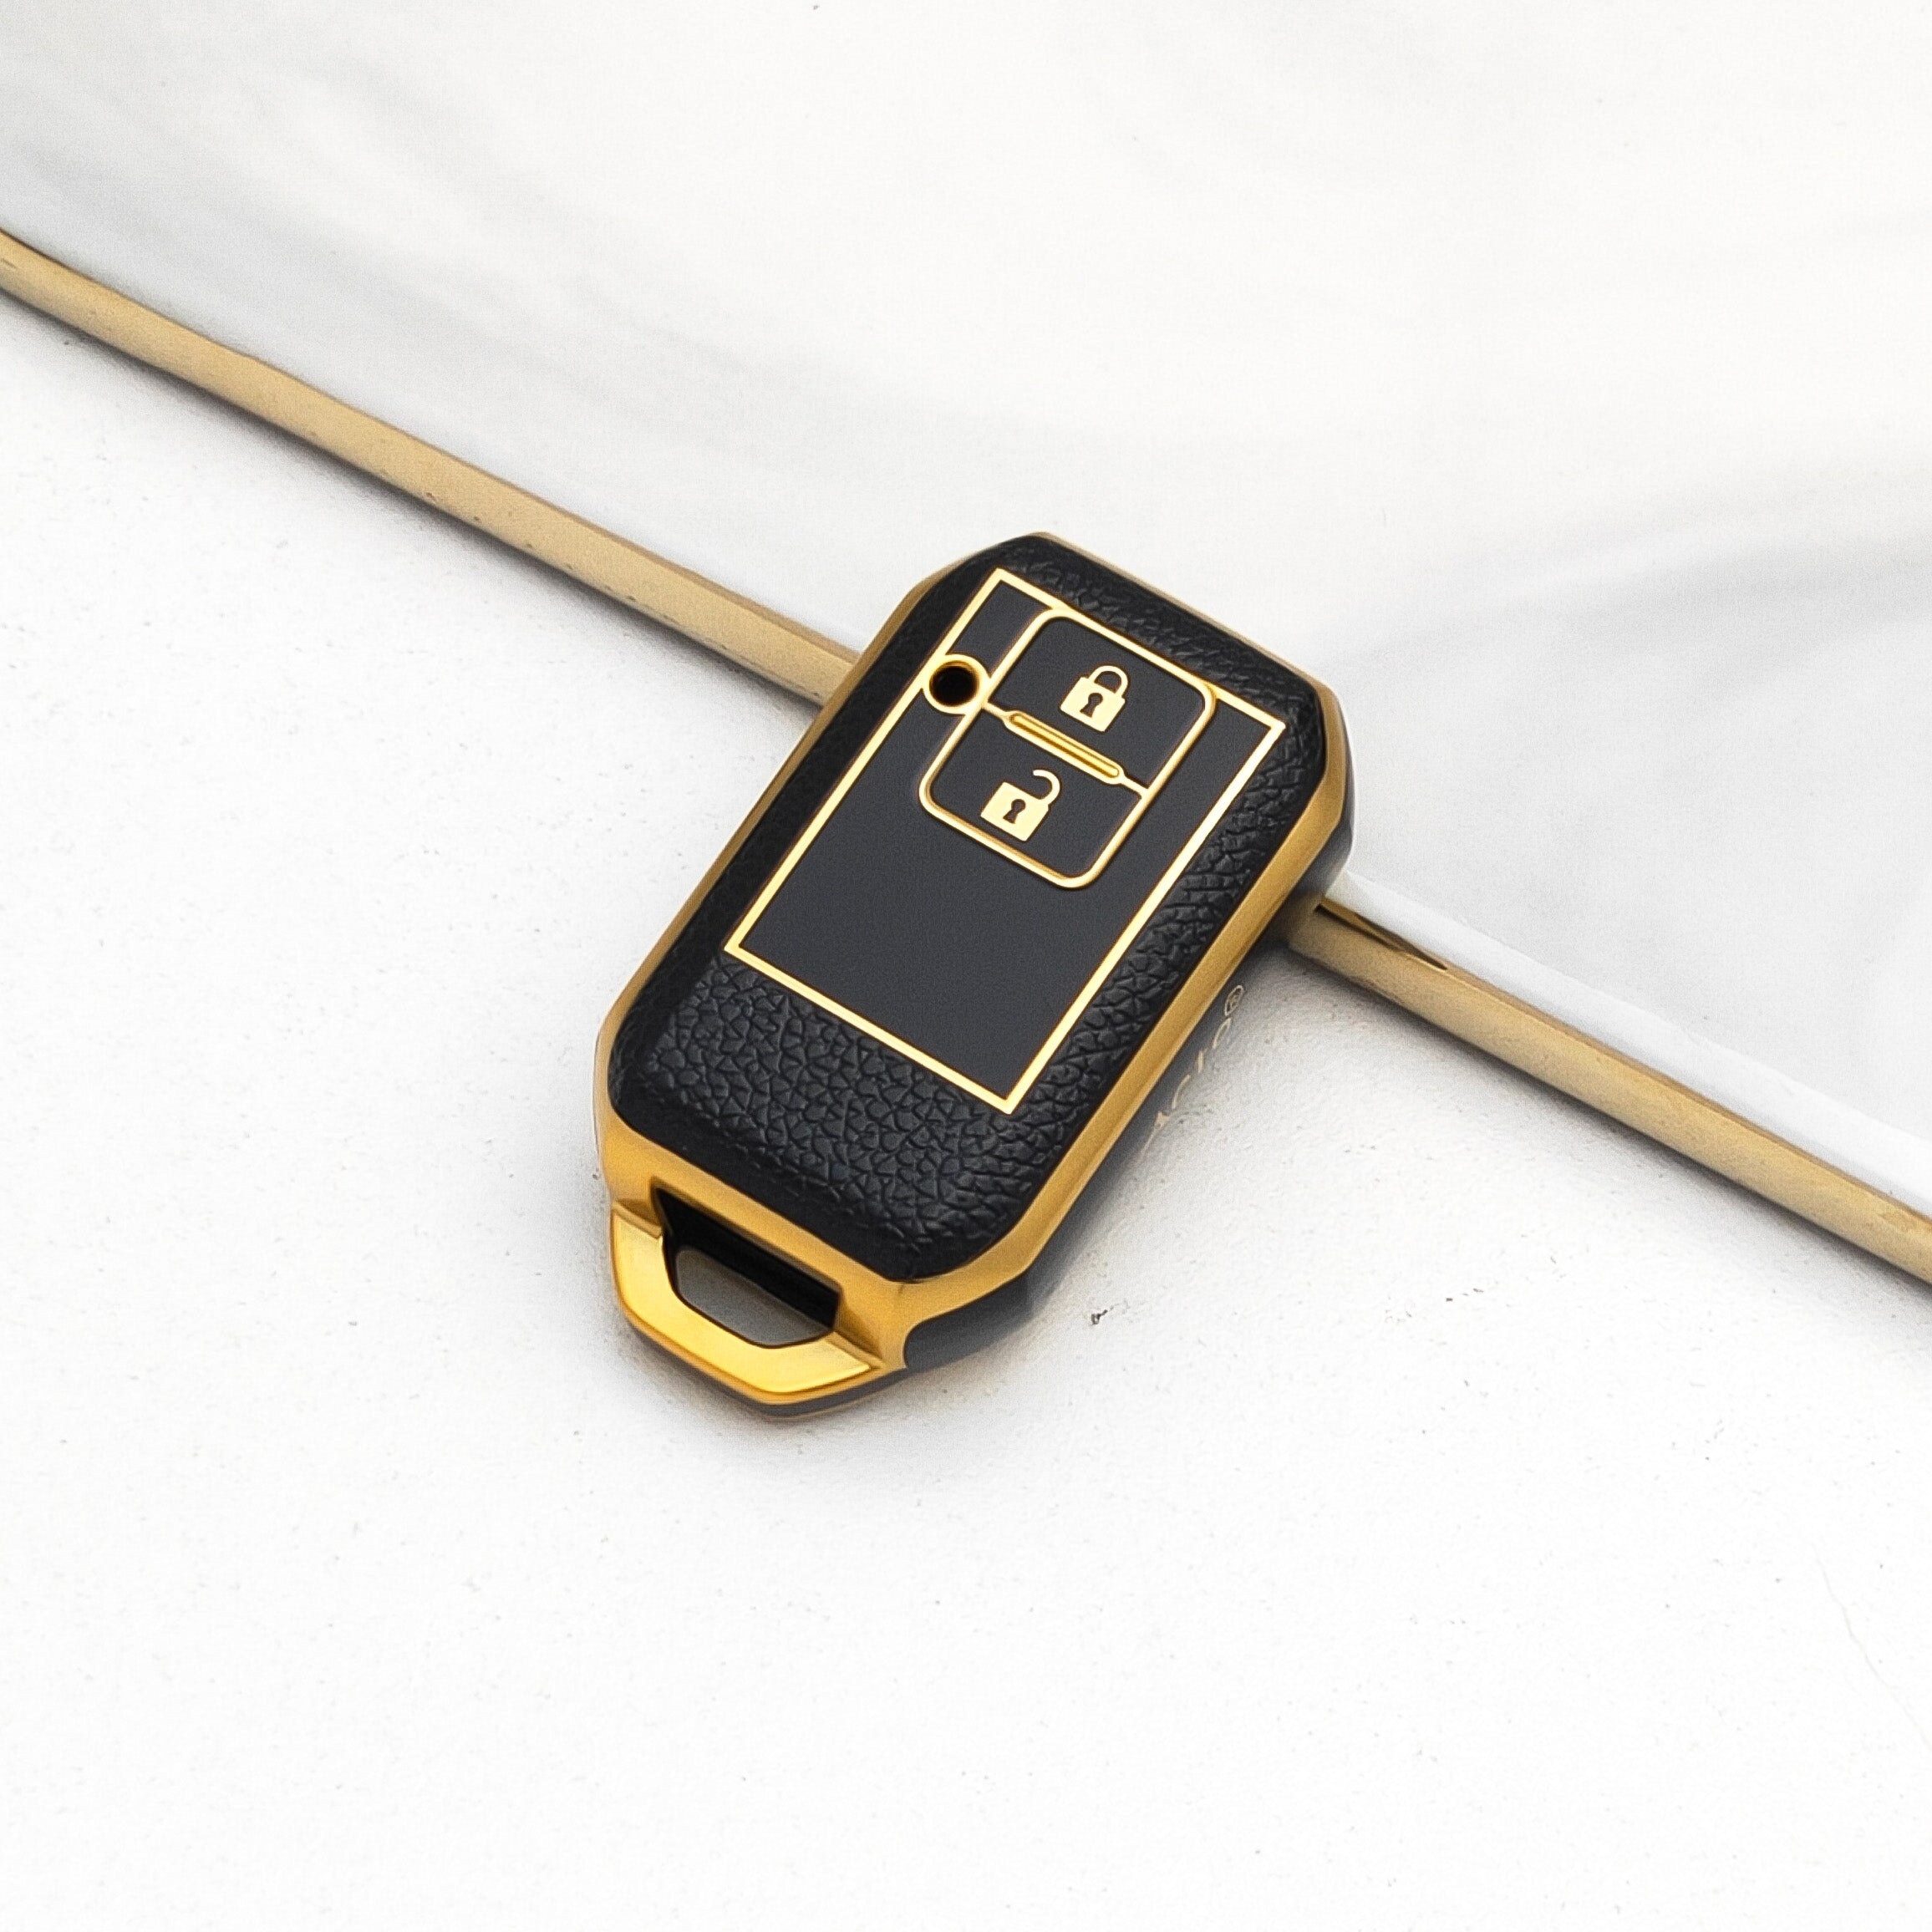 Acto Car Key Cover TPU Leather Grain For Suzuki New Ertiga